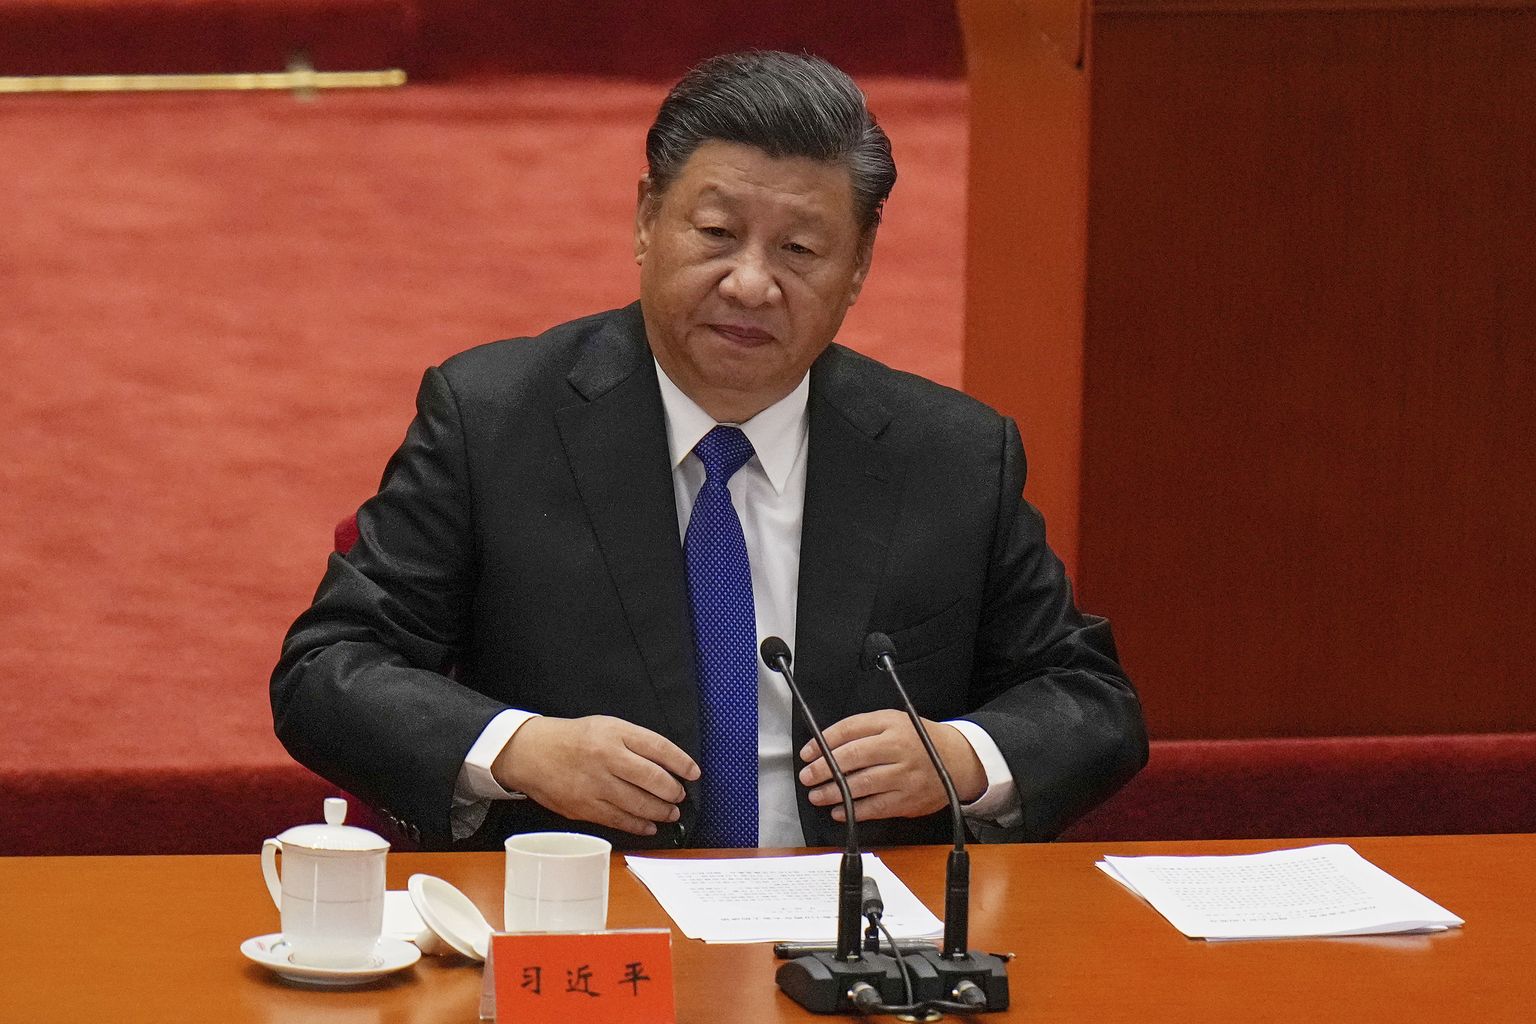 Hiina liider Xi Jinping.